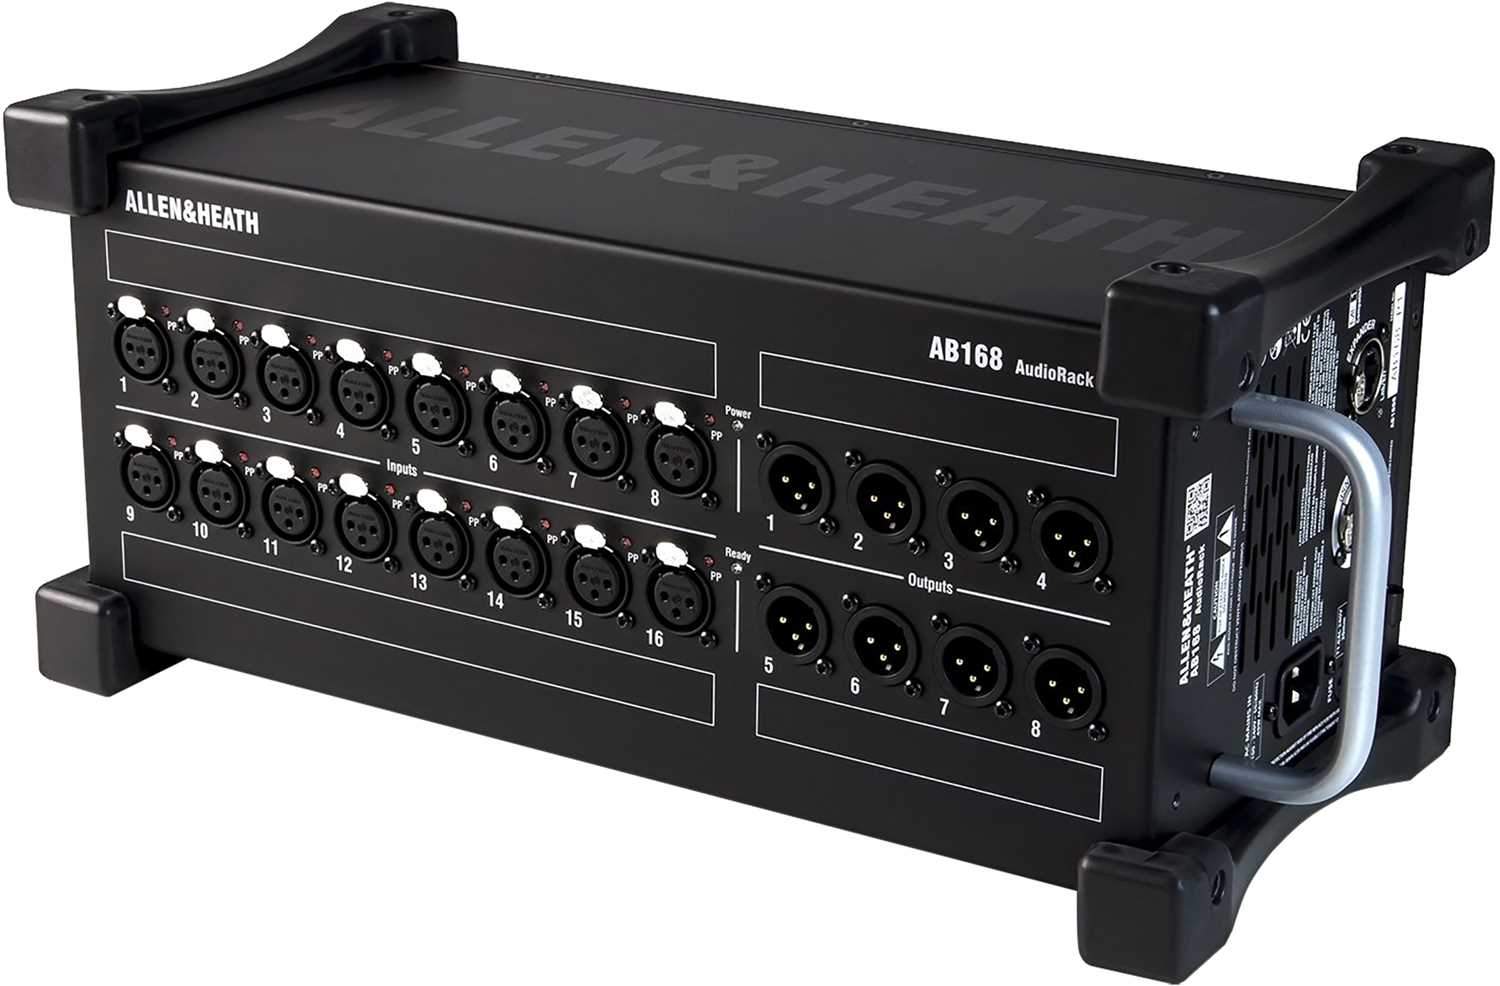 Allen & Heath SQ-5 Digital Mixer with AR84 & AR168 - PSSL ProSound and Stage Lighting